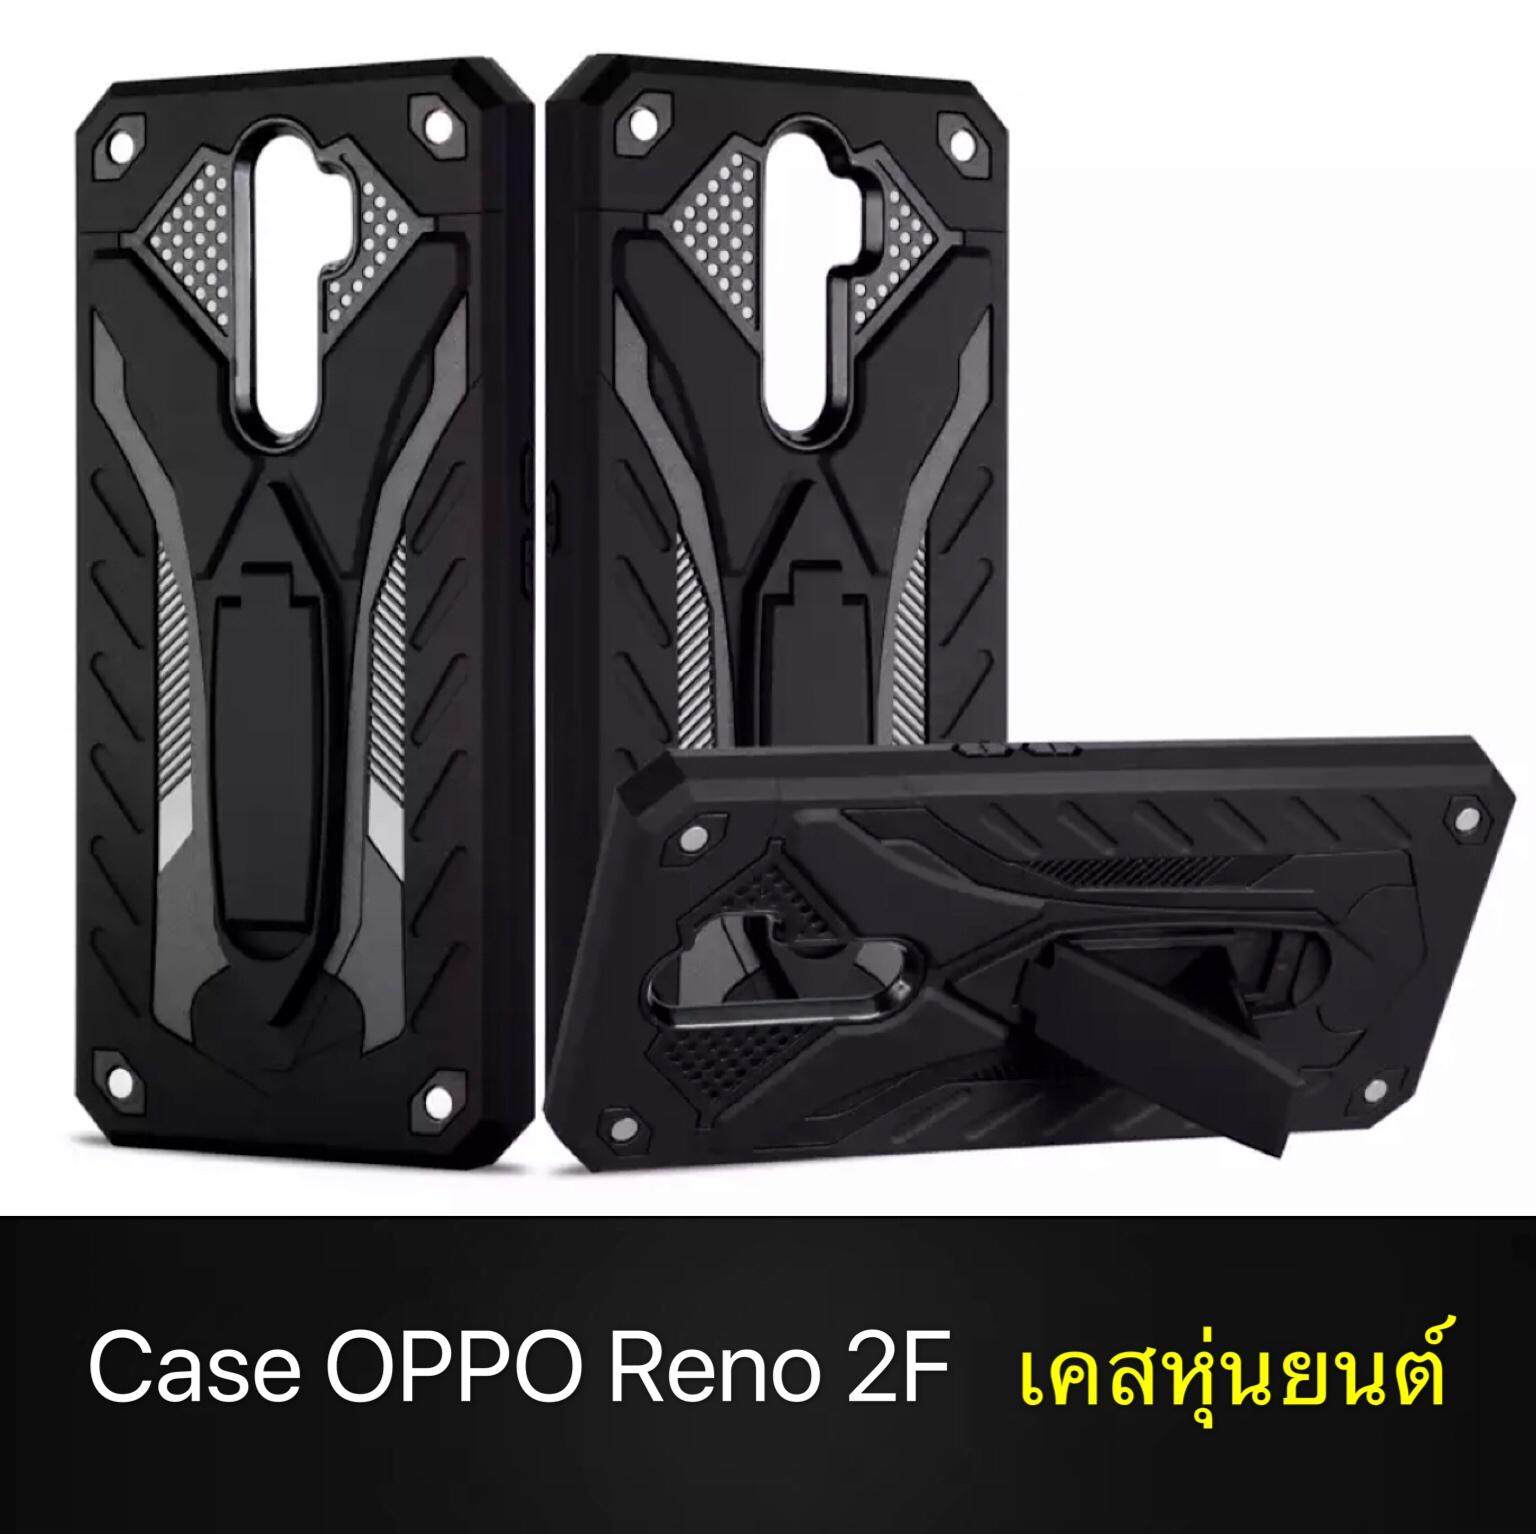 พร้อมส่งทันที Case OPPO Reno 2F เคสออฟโป้ Oppo Reno2F เคสหุ่นยนต์ เคสไฮบริด มีขาตั้ง เคสกันกระแทก สินค้าใหม่ TPU CASE